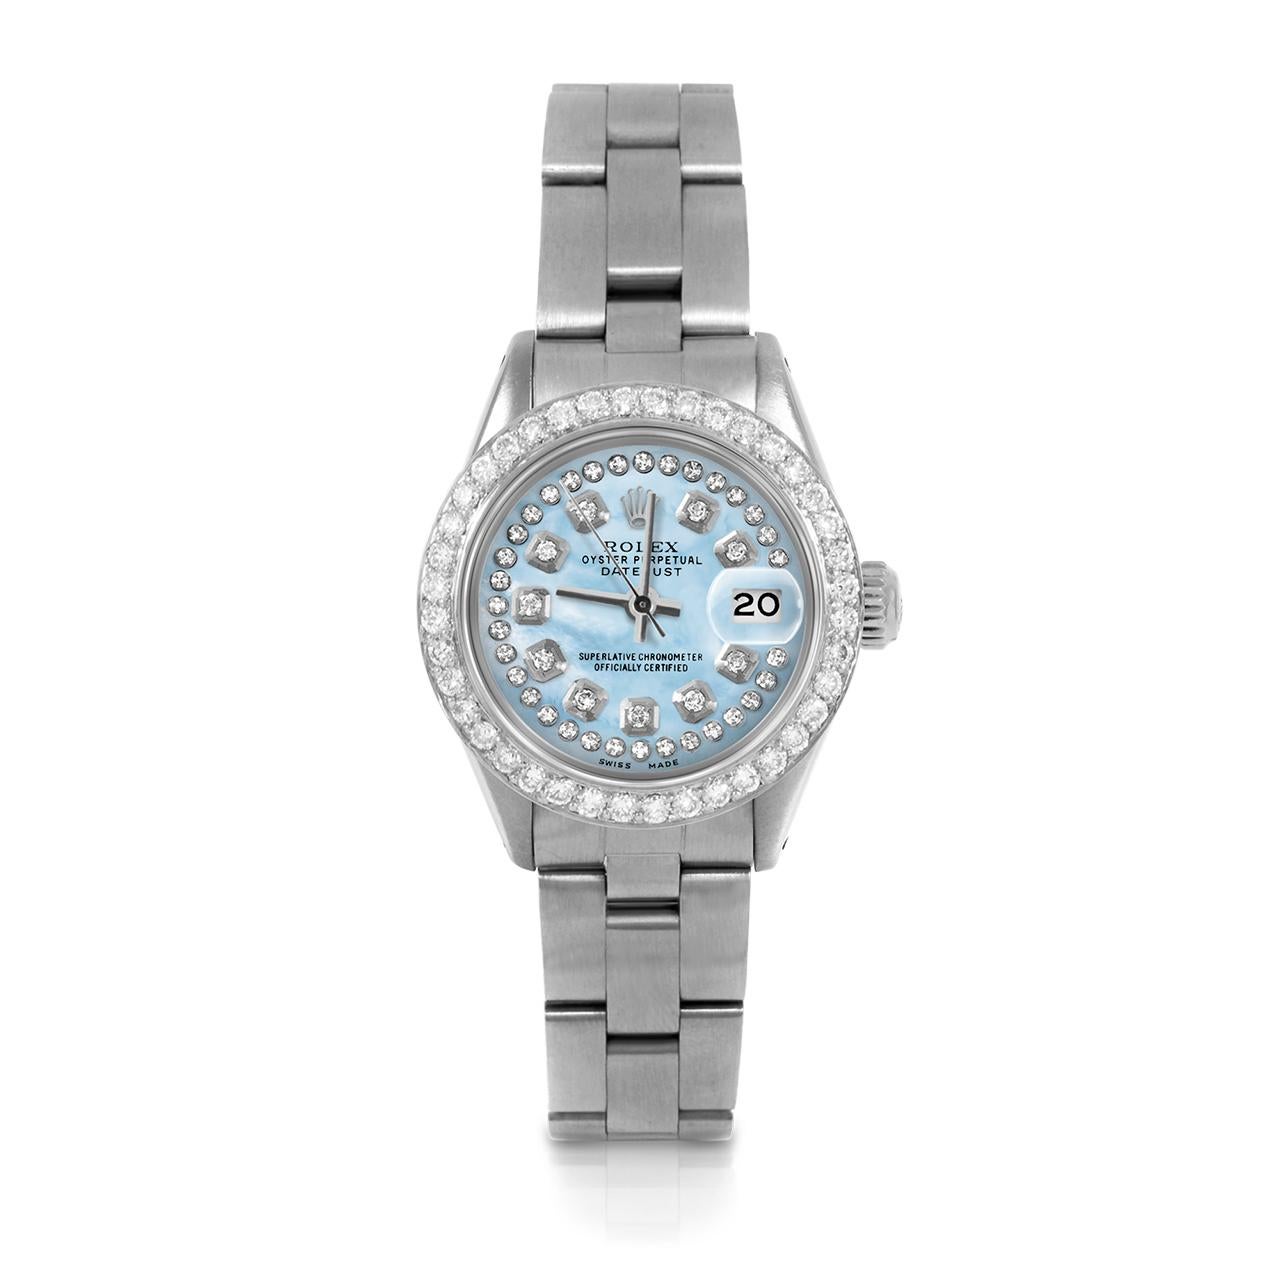 Montre Rolex 6917 26mm Datejust pour femme d'occasion, cadran personnalisé en nacre bleu clair avec diamants et lunette personnalisée avec 1ct de diamant sur bracelet Rolex Oyster en acier inoxydable.   

SKU